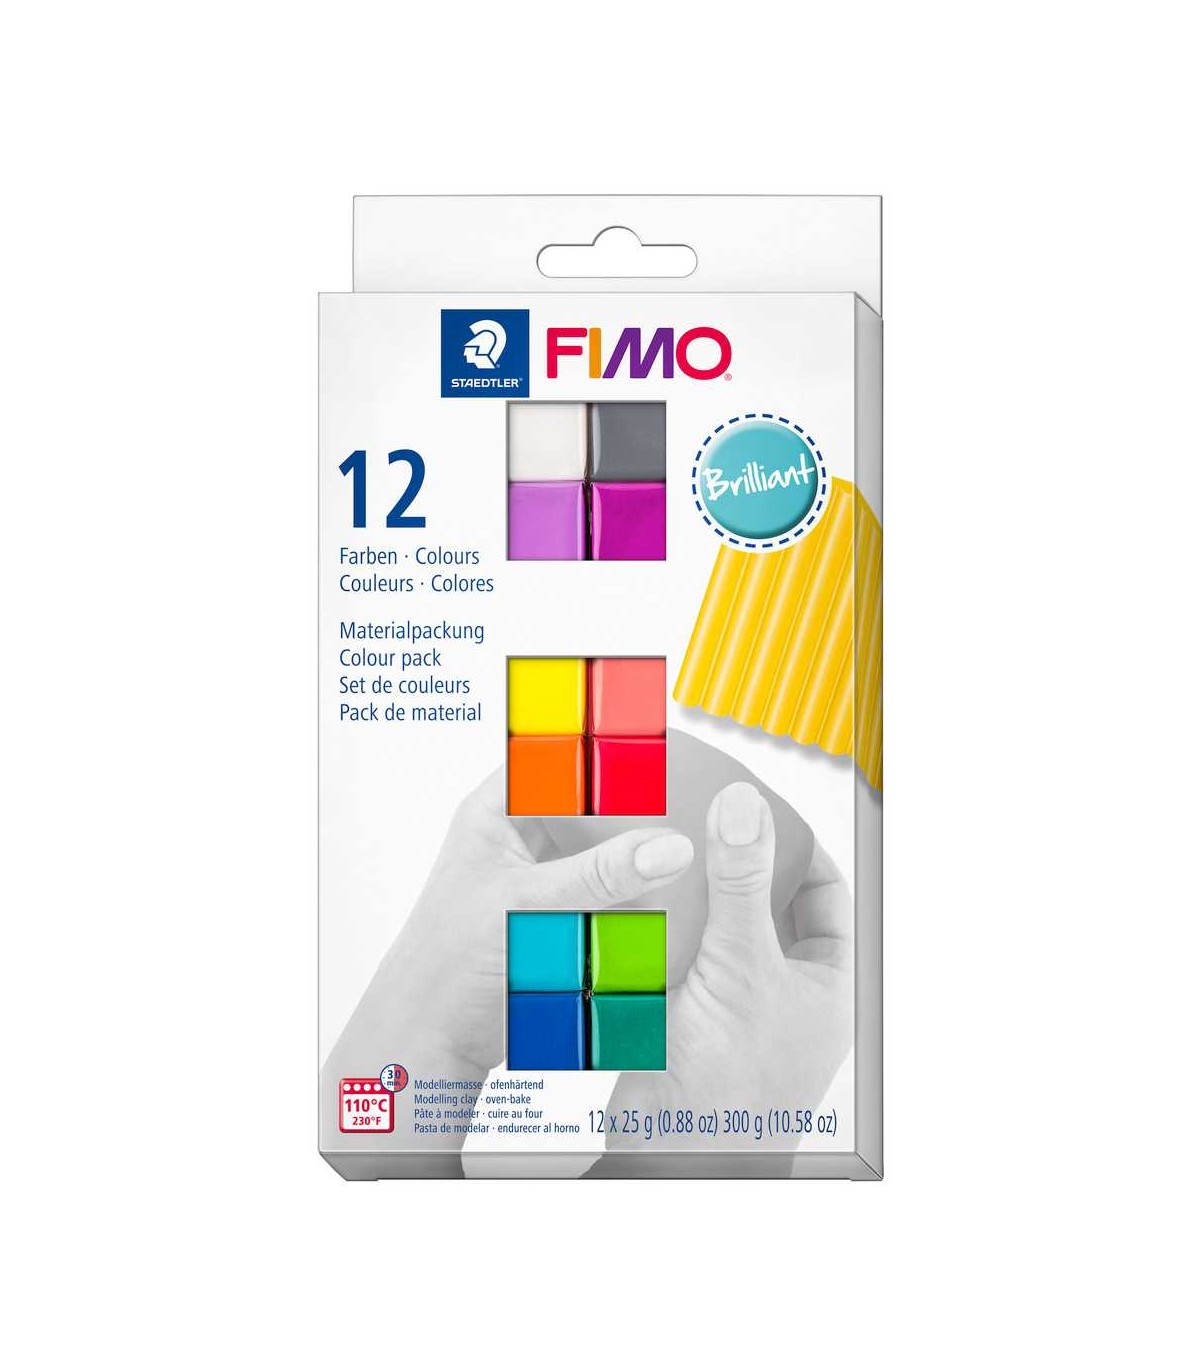 Fimo Coffret Fimo Pro 12 pains de 25g Ethnique 8073 c12-1 pas cher 